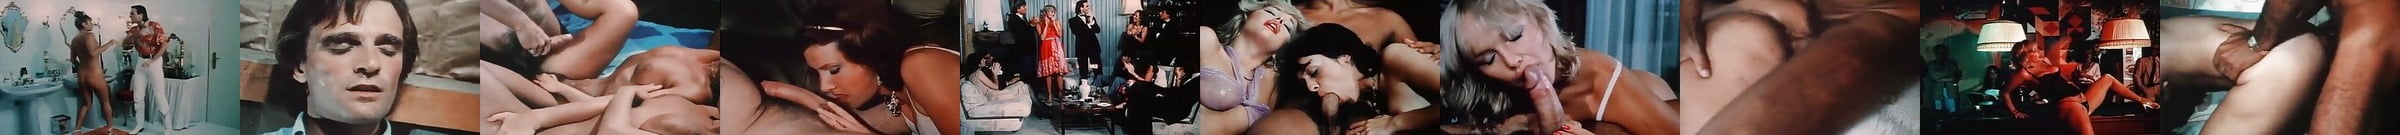 Call Girls De Luxe 2k 1979 Free Girl Vimeo Hd Porn 02